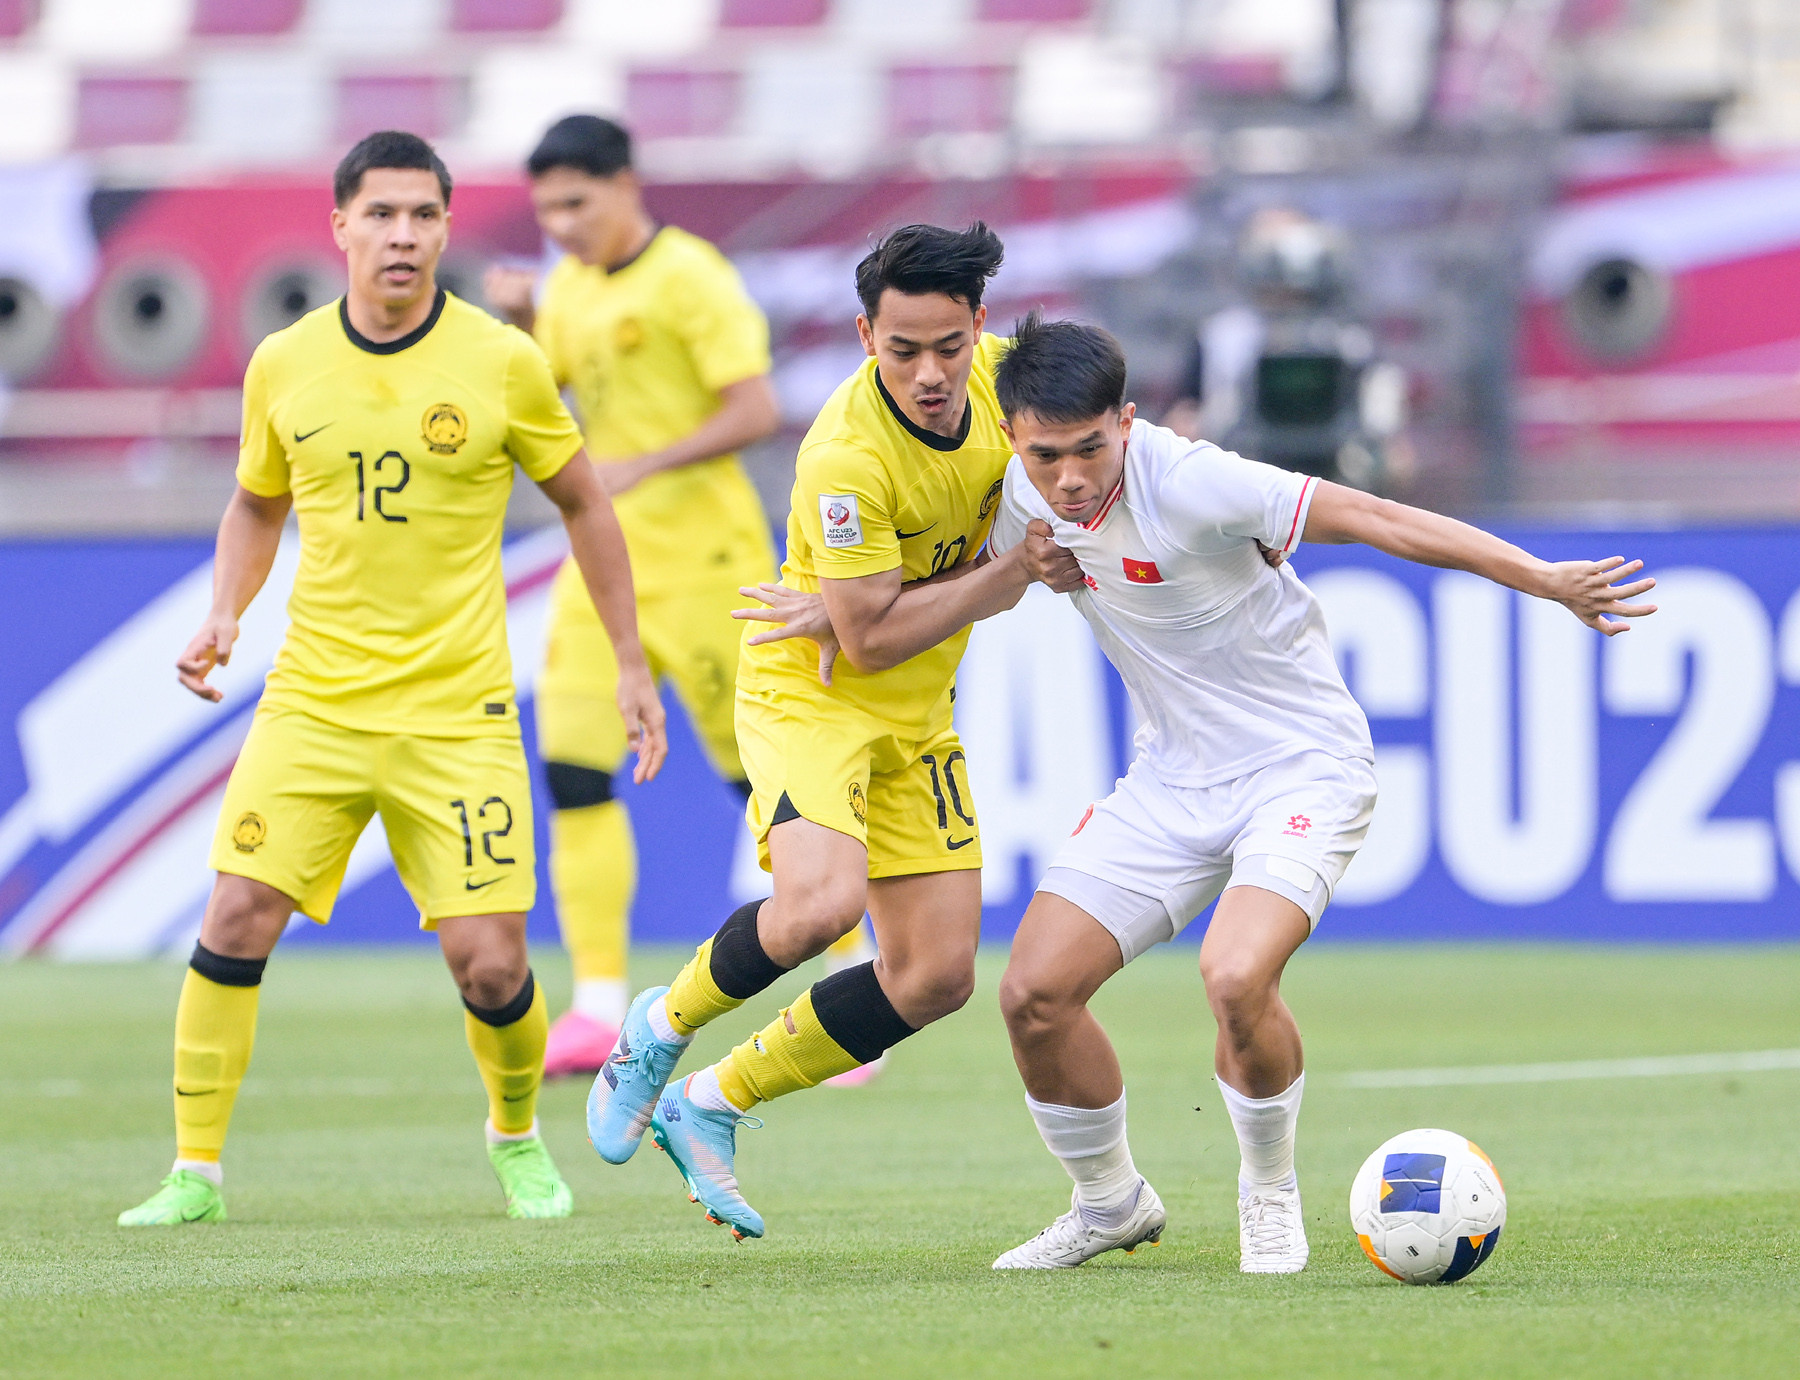  Đội hình U23 Việt Nam đấu U23 Uzbekistan: Toan tính nhưng không tiêu cực